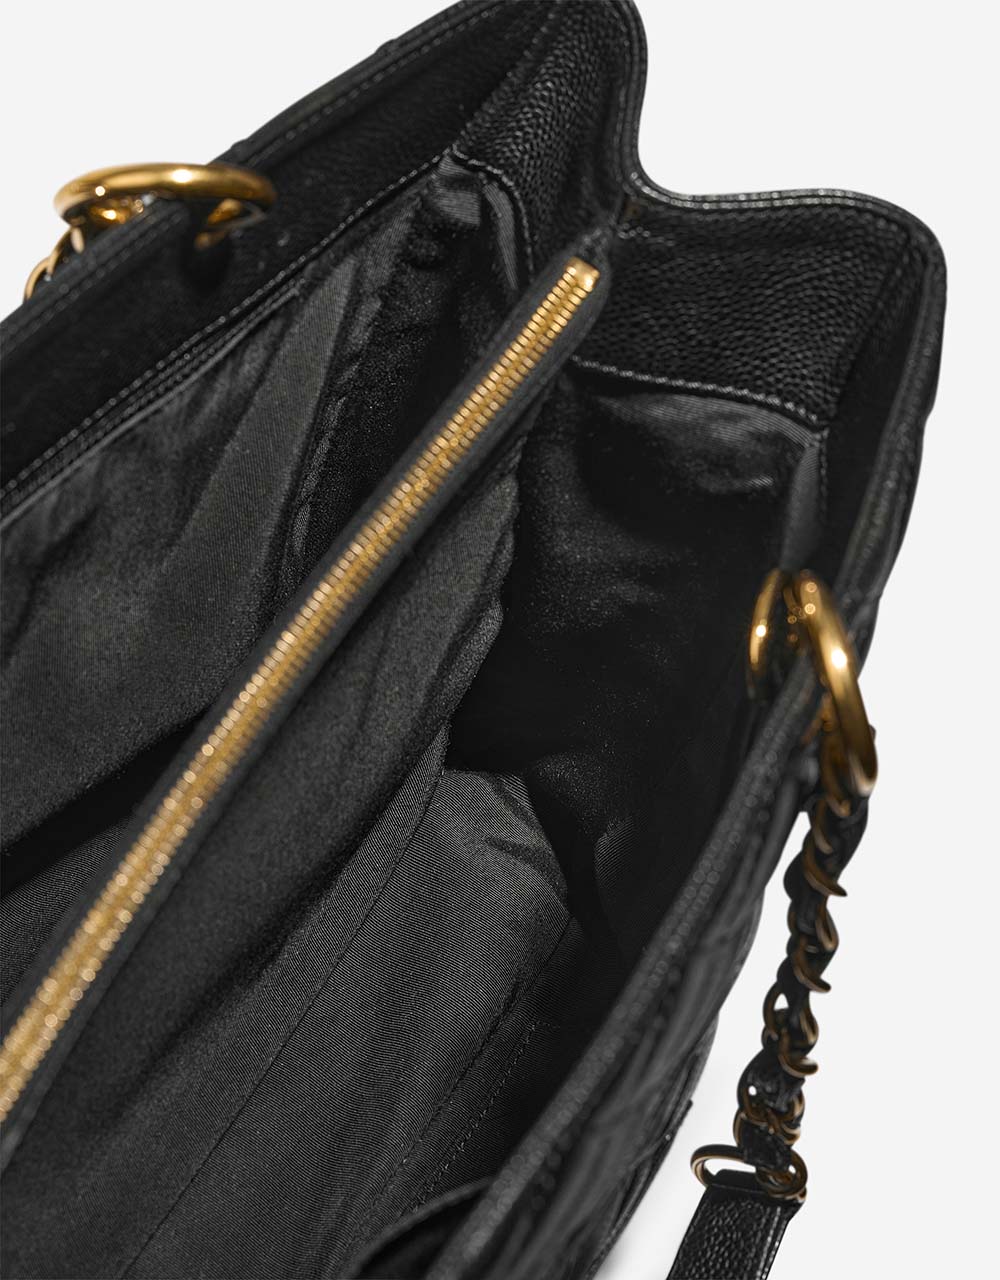 Chanel ShoppingTote Grande Black Inside | Verkaufen Sie Ihre Designertasche auf Saclab.com